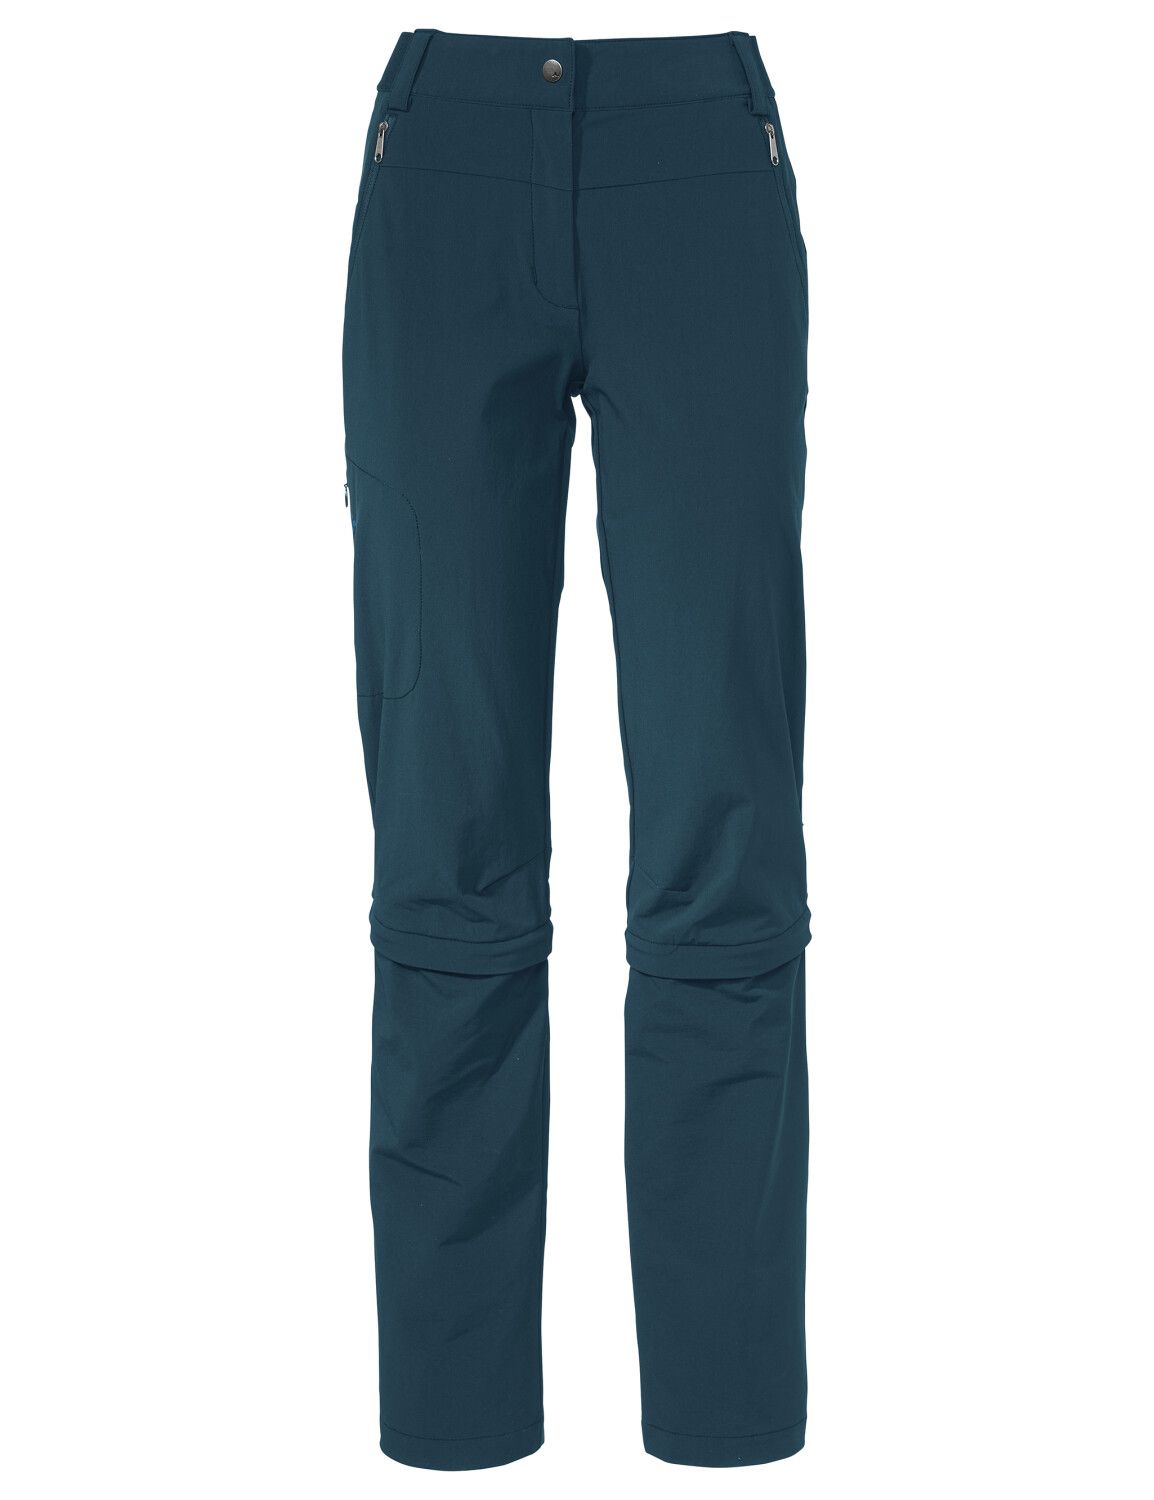 VAUDE Women's Farley Stretch Capri T-Zip Pants III (Bild 29)